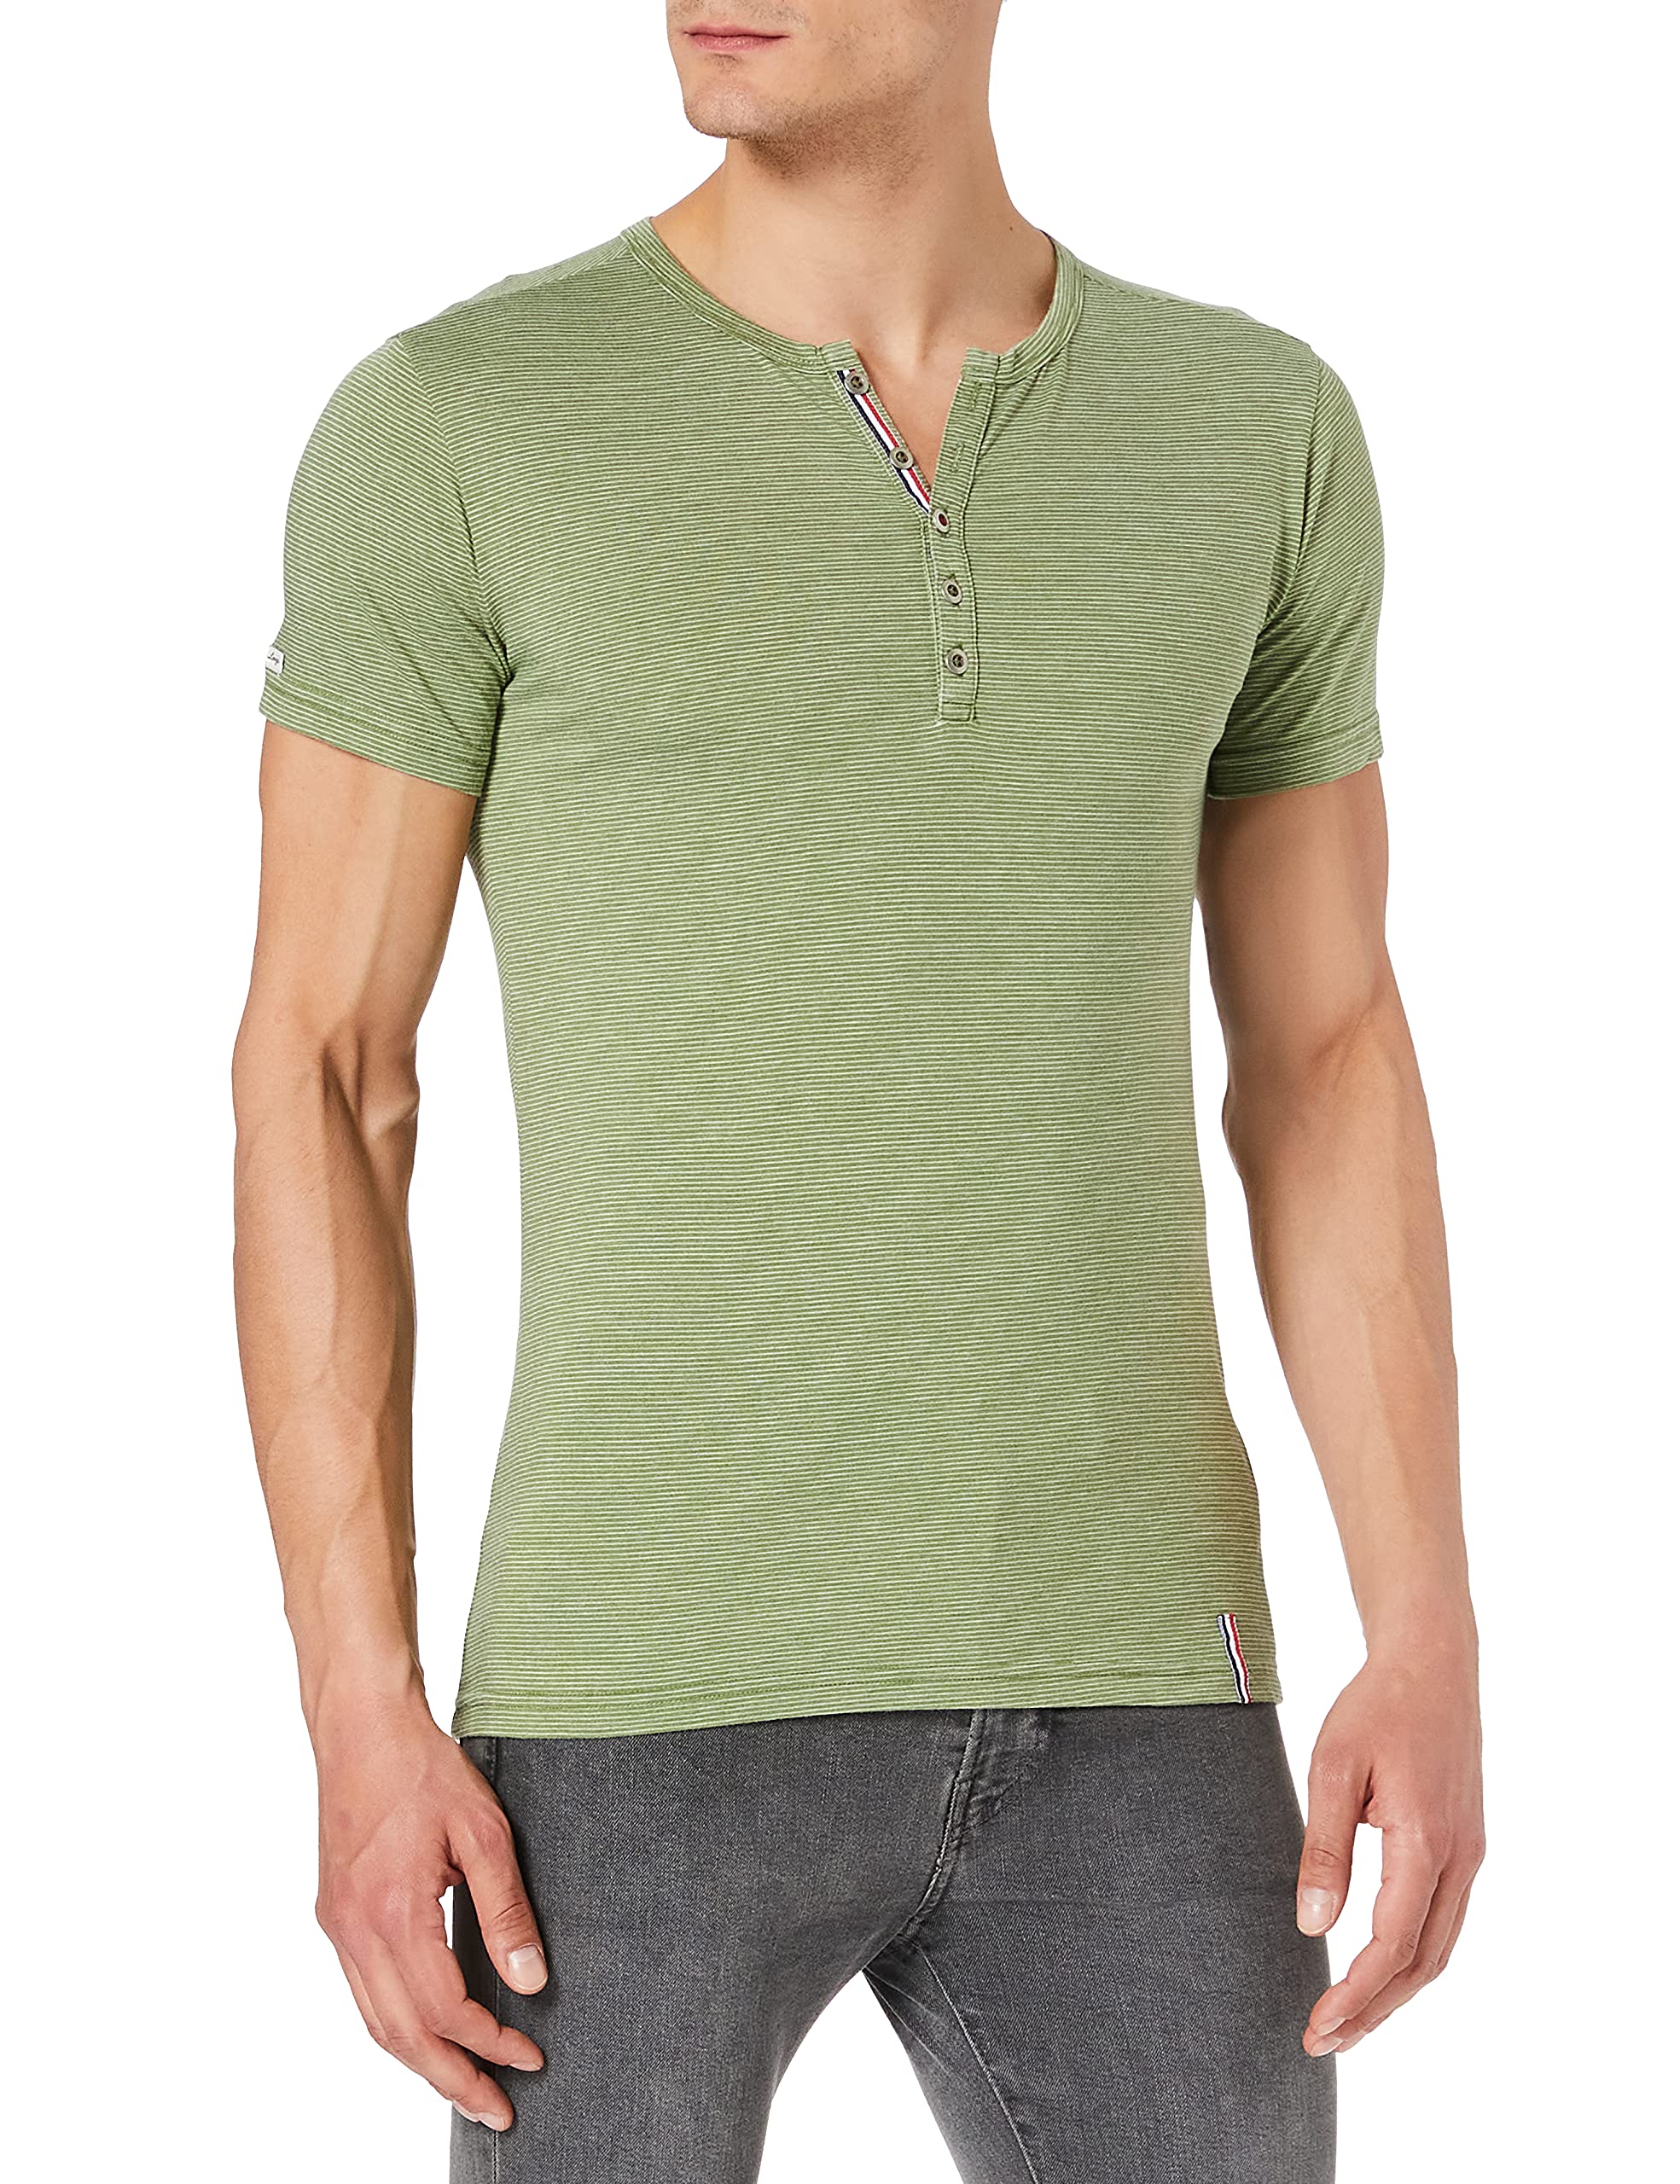 KEYLARGO Herren MT Dieter T-Shirt, Green (1500), XL